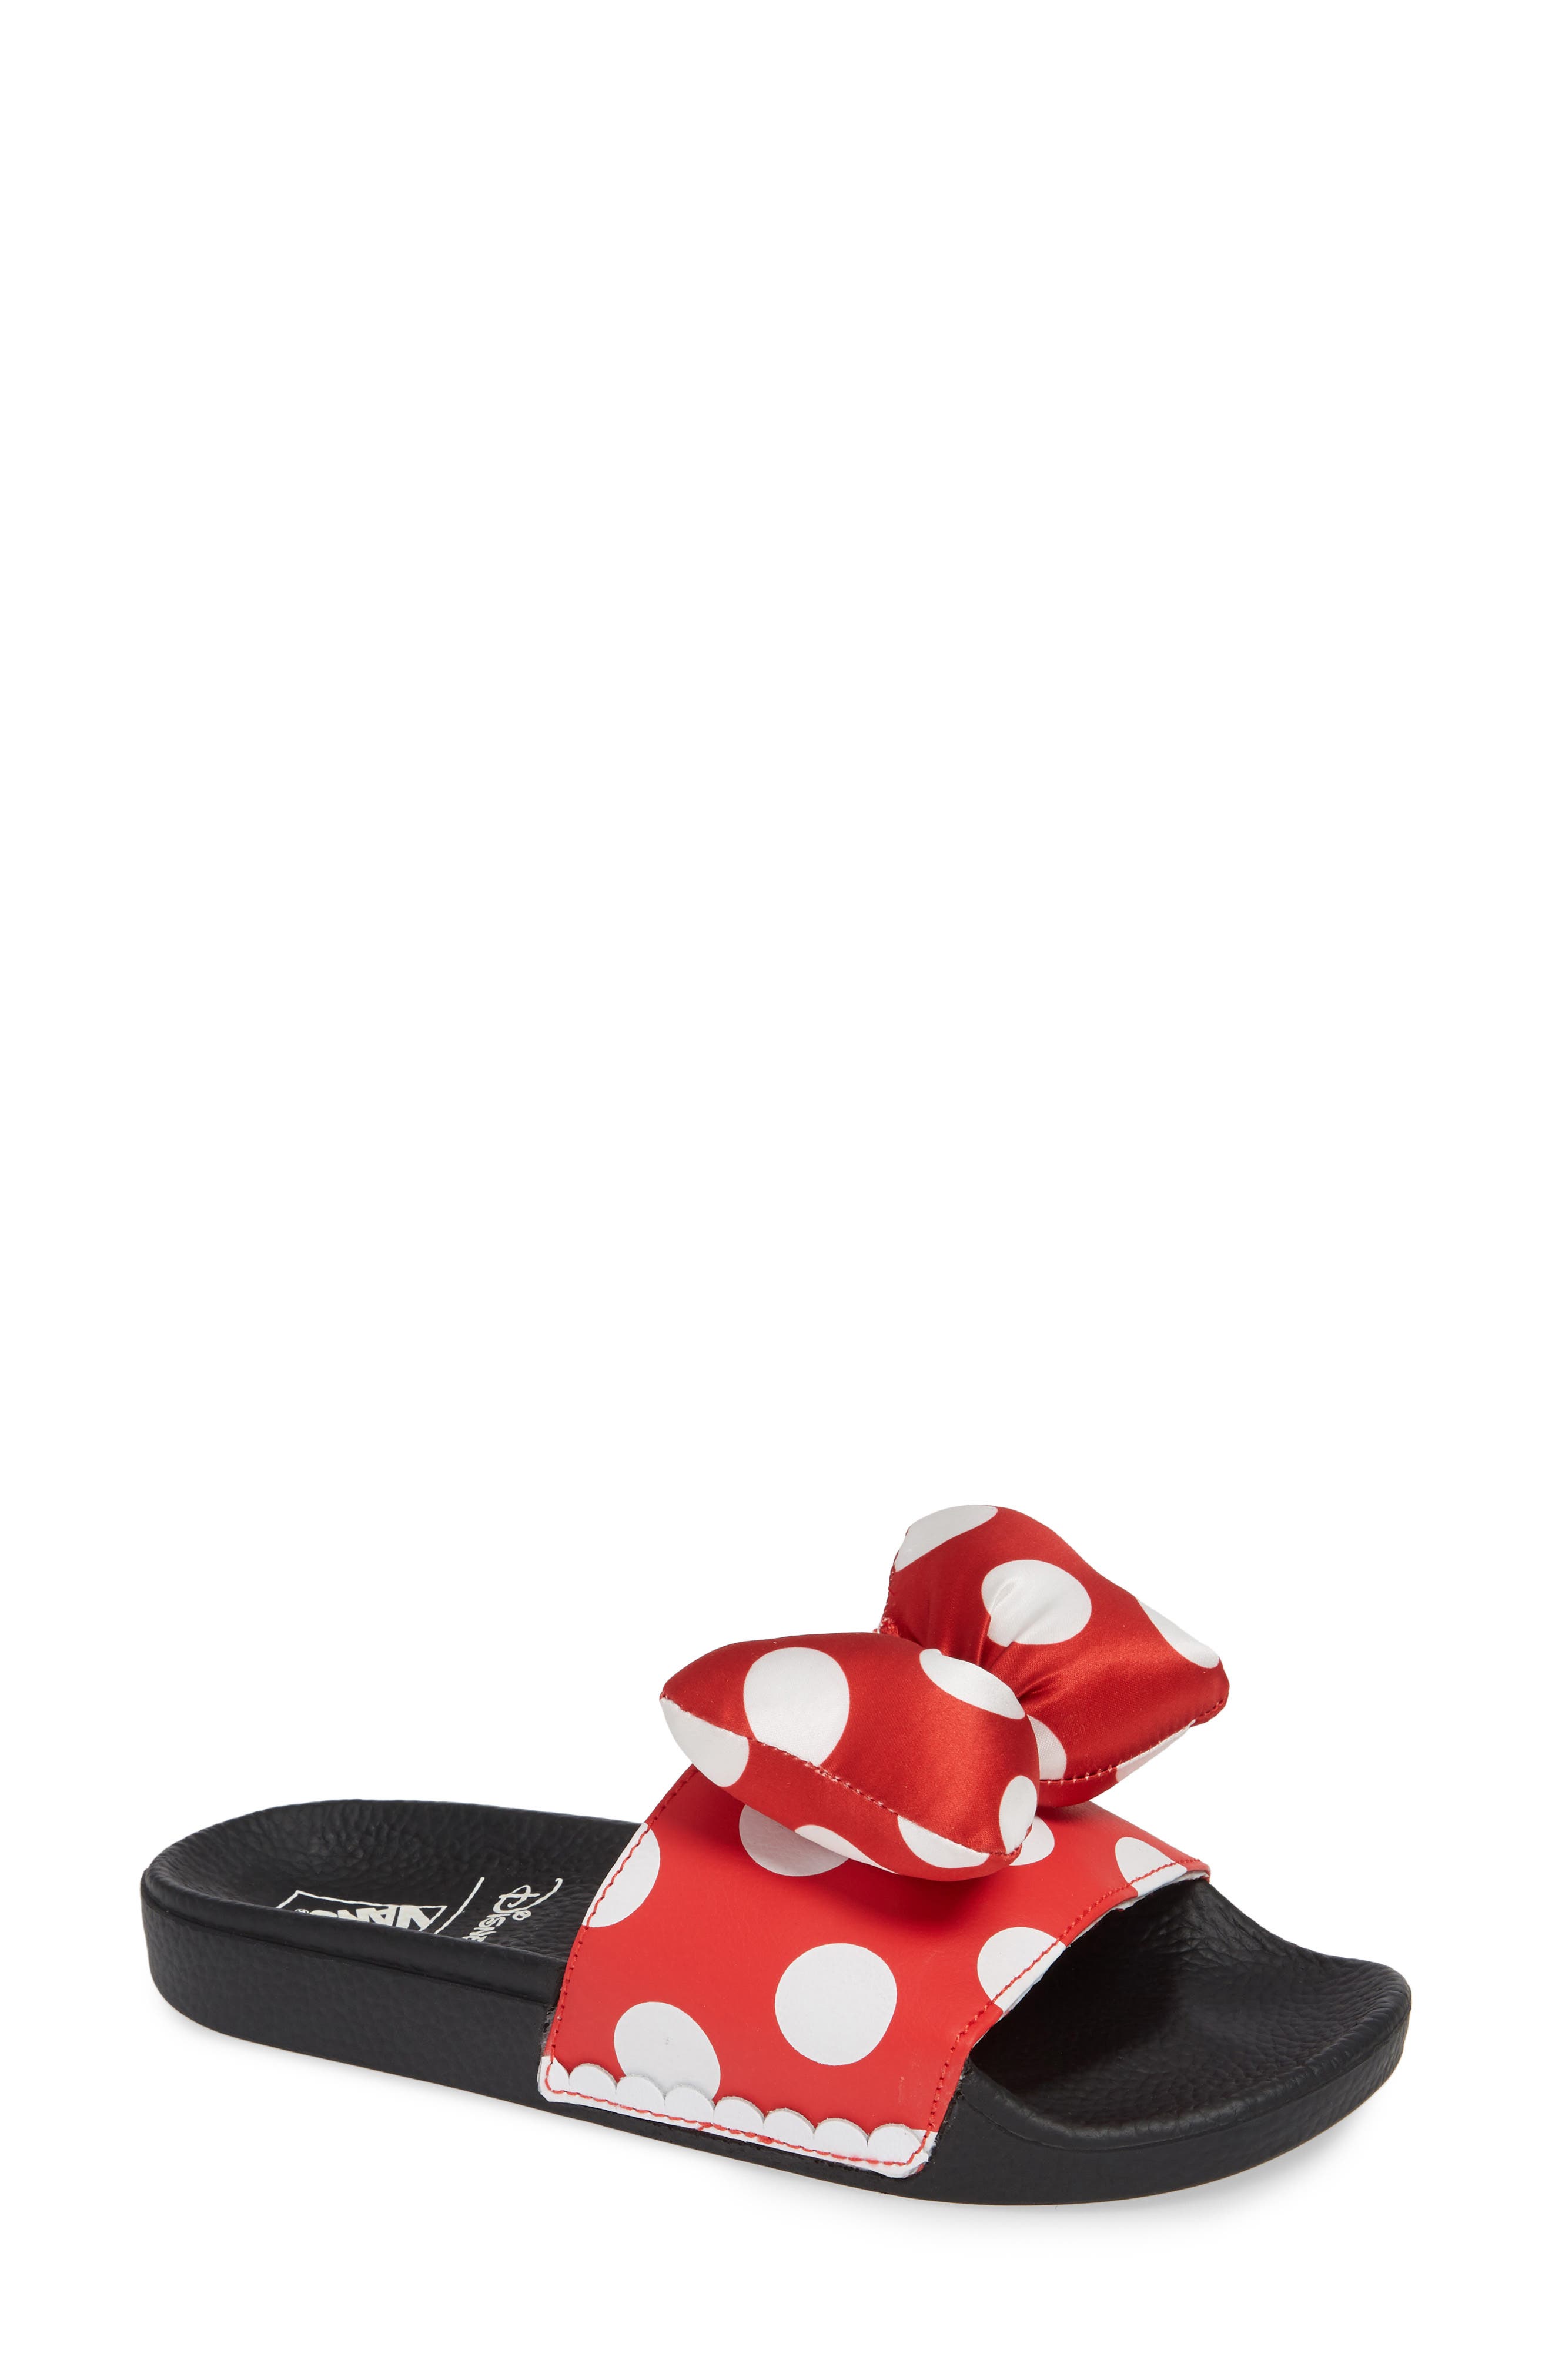 Vans x Disney Minnie Mouse Slide Sandal 